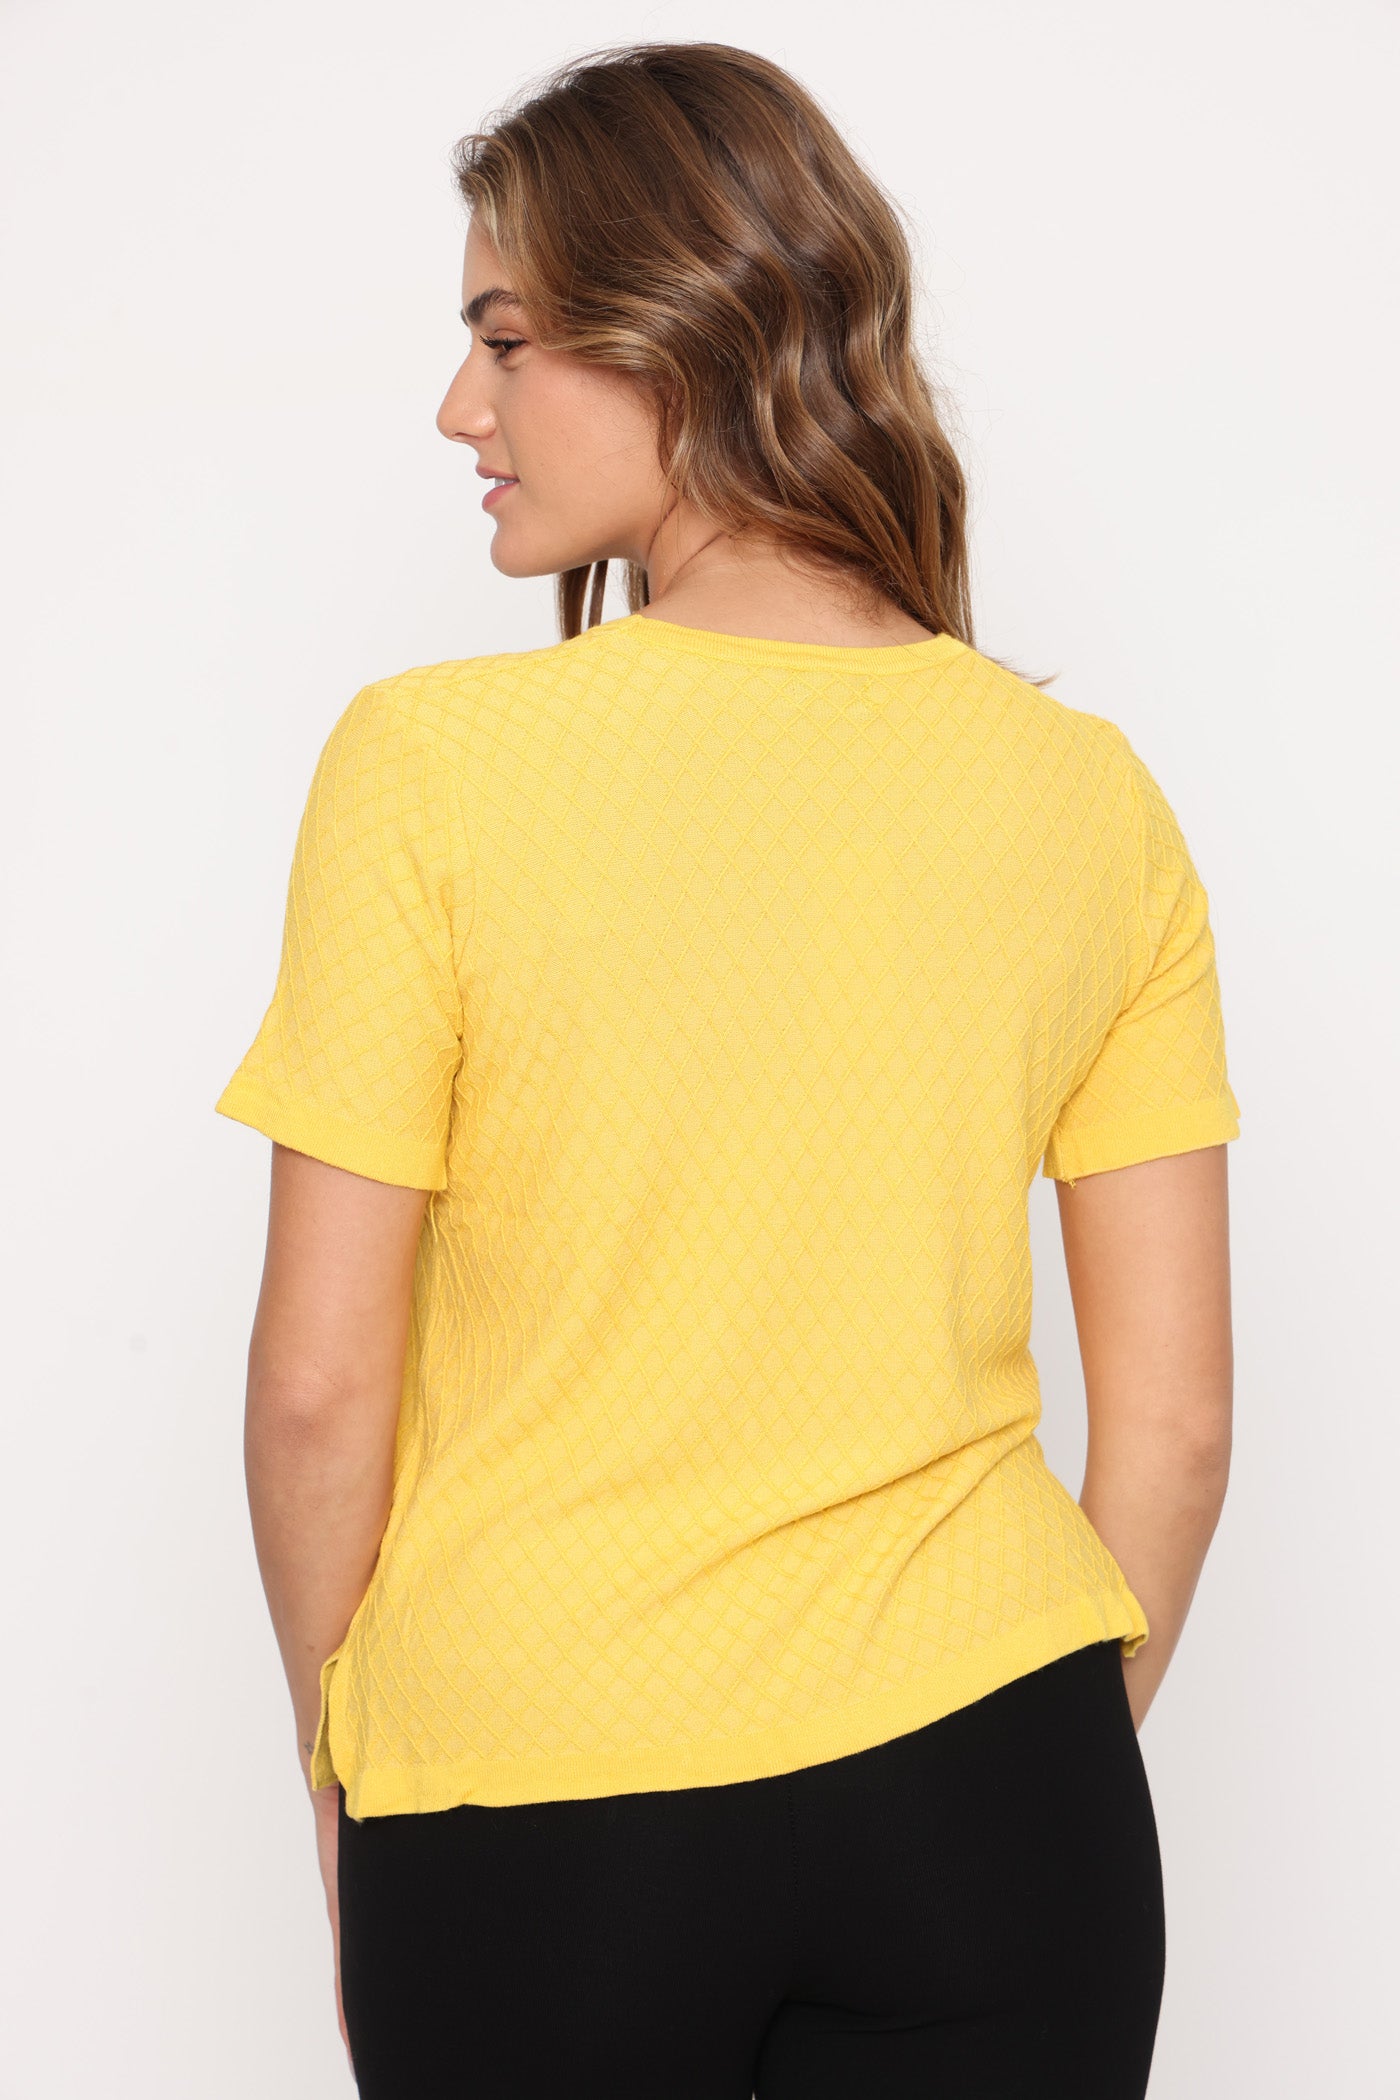 חולצת צמר מעויינים צהוב חורף